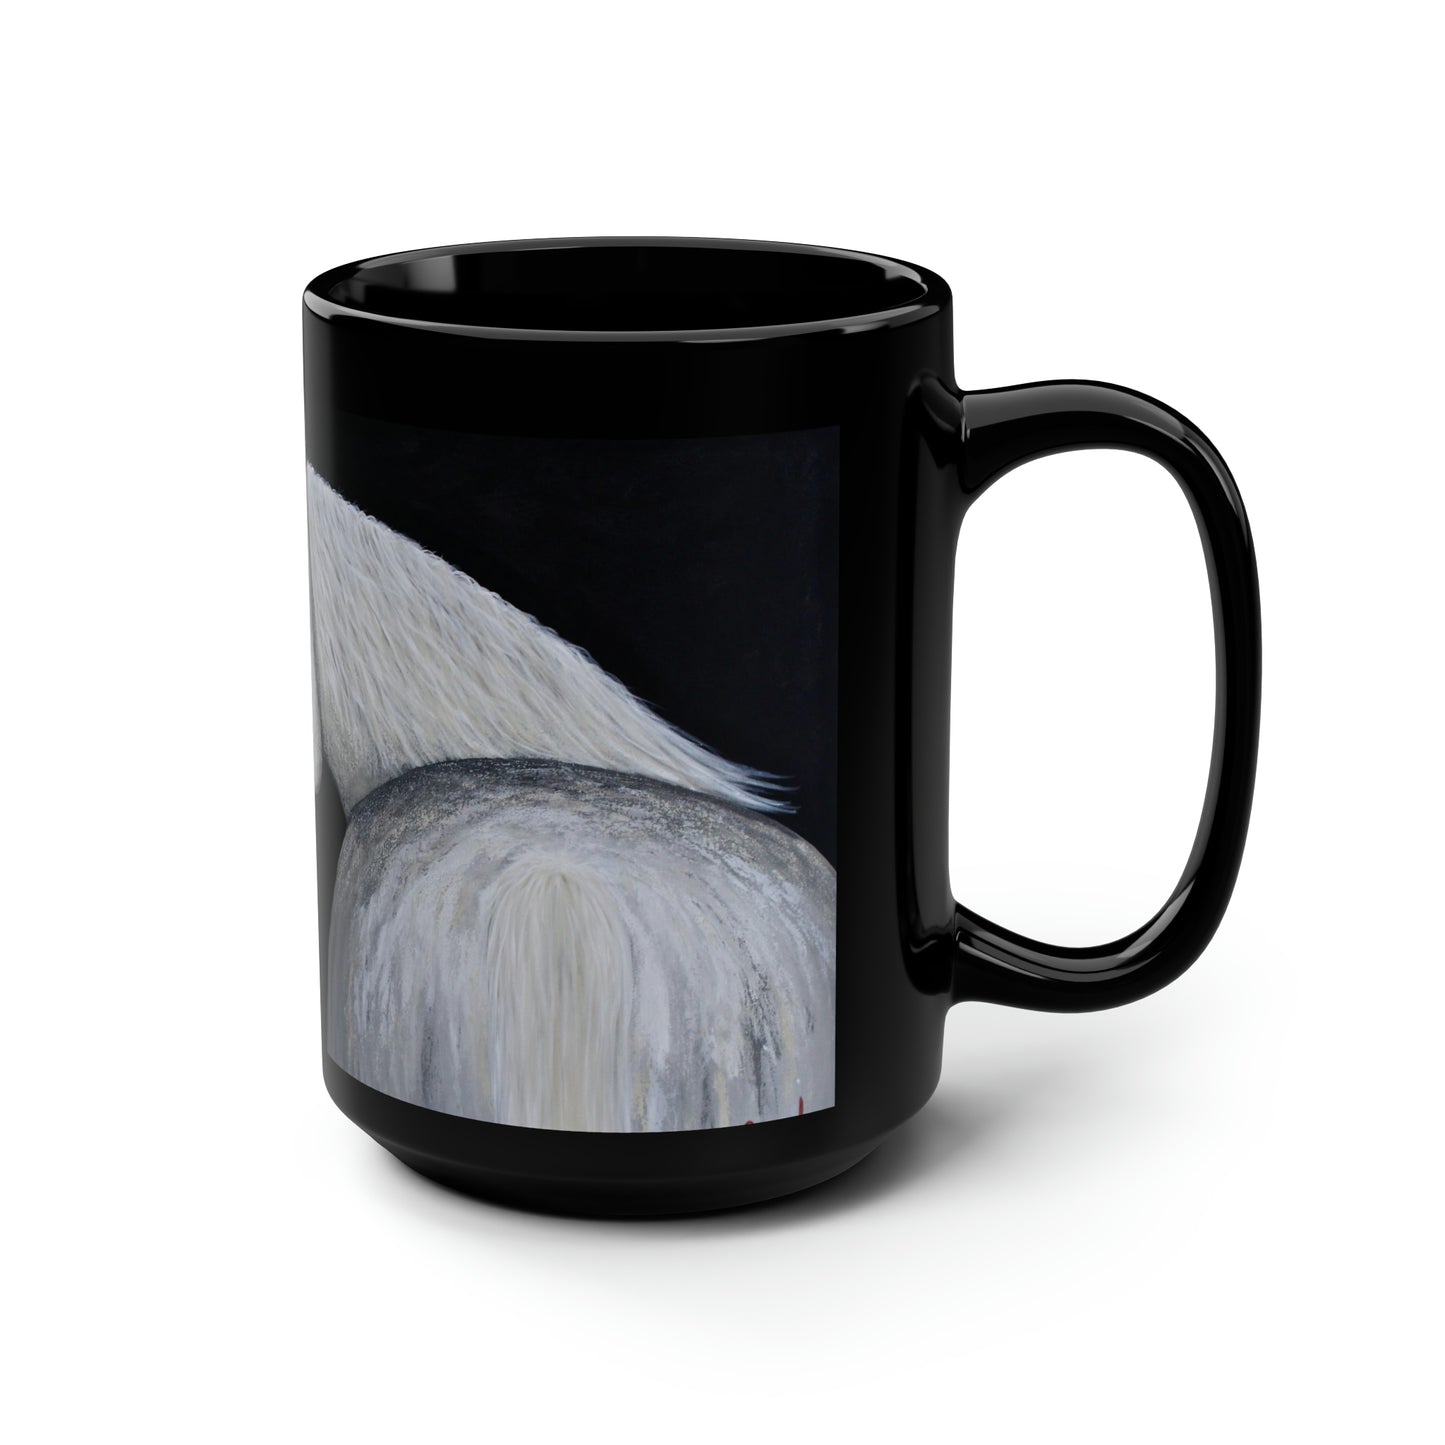 Black Mug, 15oz - Ghost Horse mug - Coffee Mug - Equestrian Mug